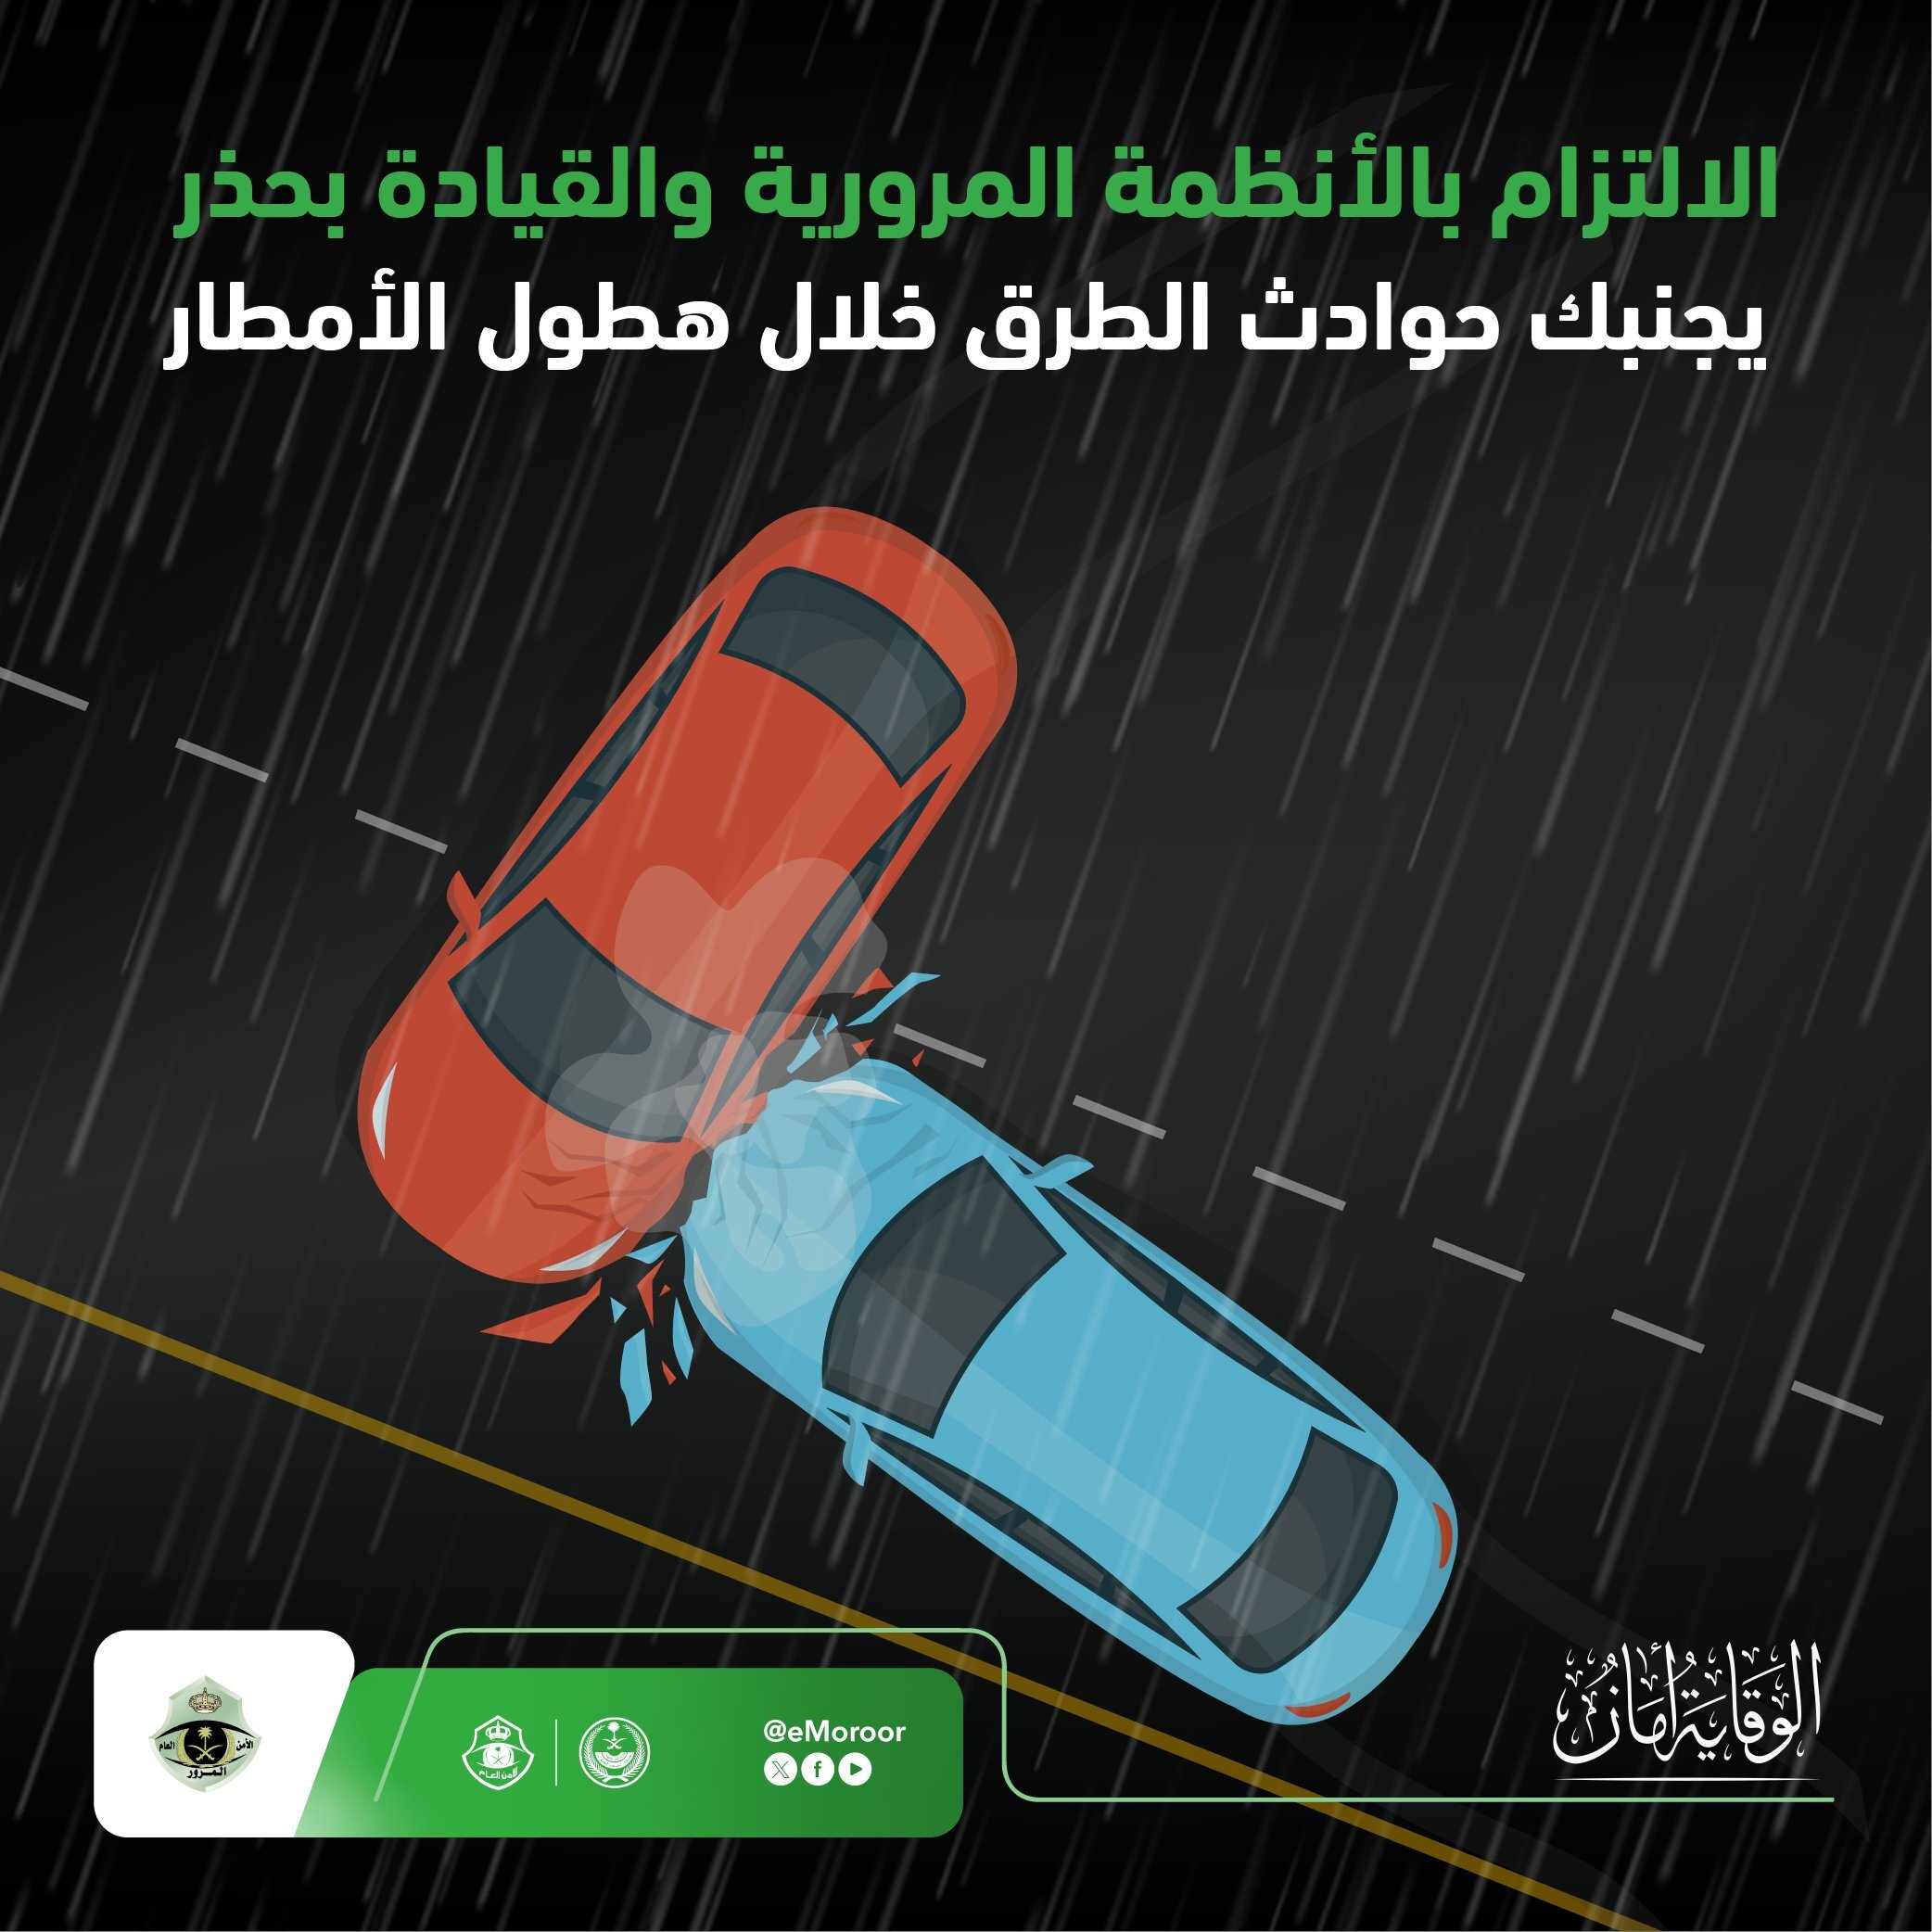 "المرور" يوجه 6 نصائح هامة لقيادة آمنة تحت الأمطار 9